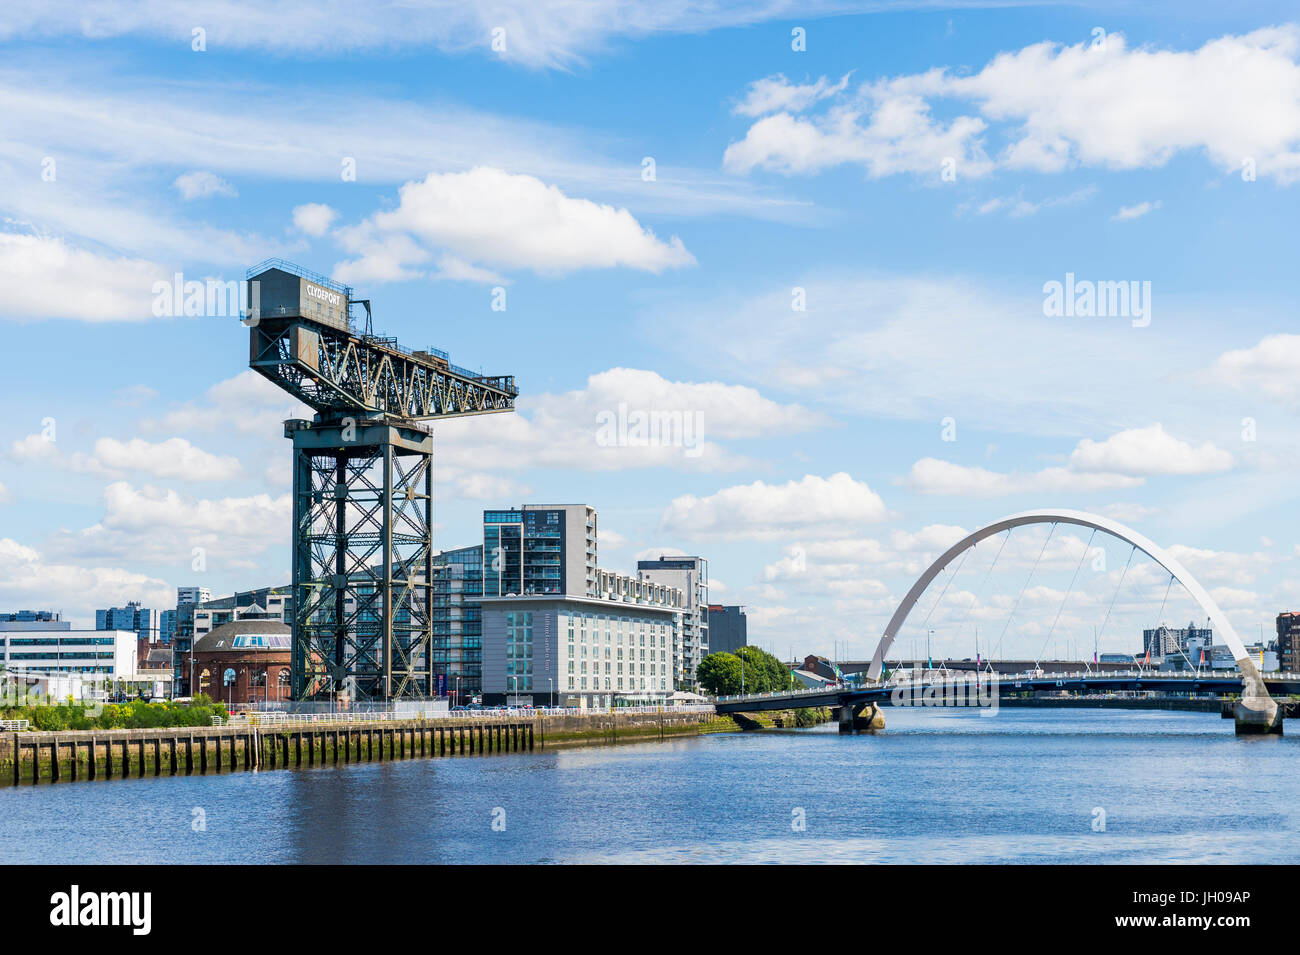 Glasgow, Scotland, UK - 8 août 2012 : l'Finnieston crane, le Clyde Arc et la Clyde, Glasgow. Banque D'Images